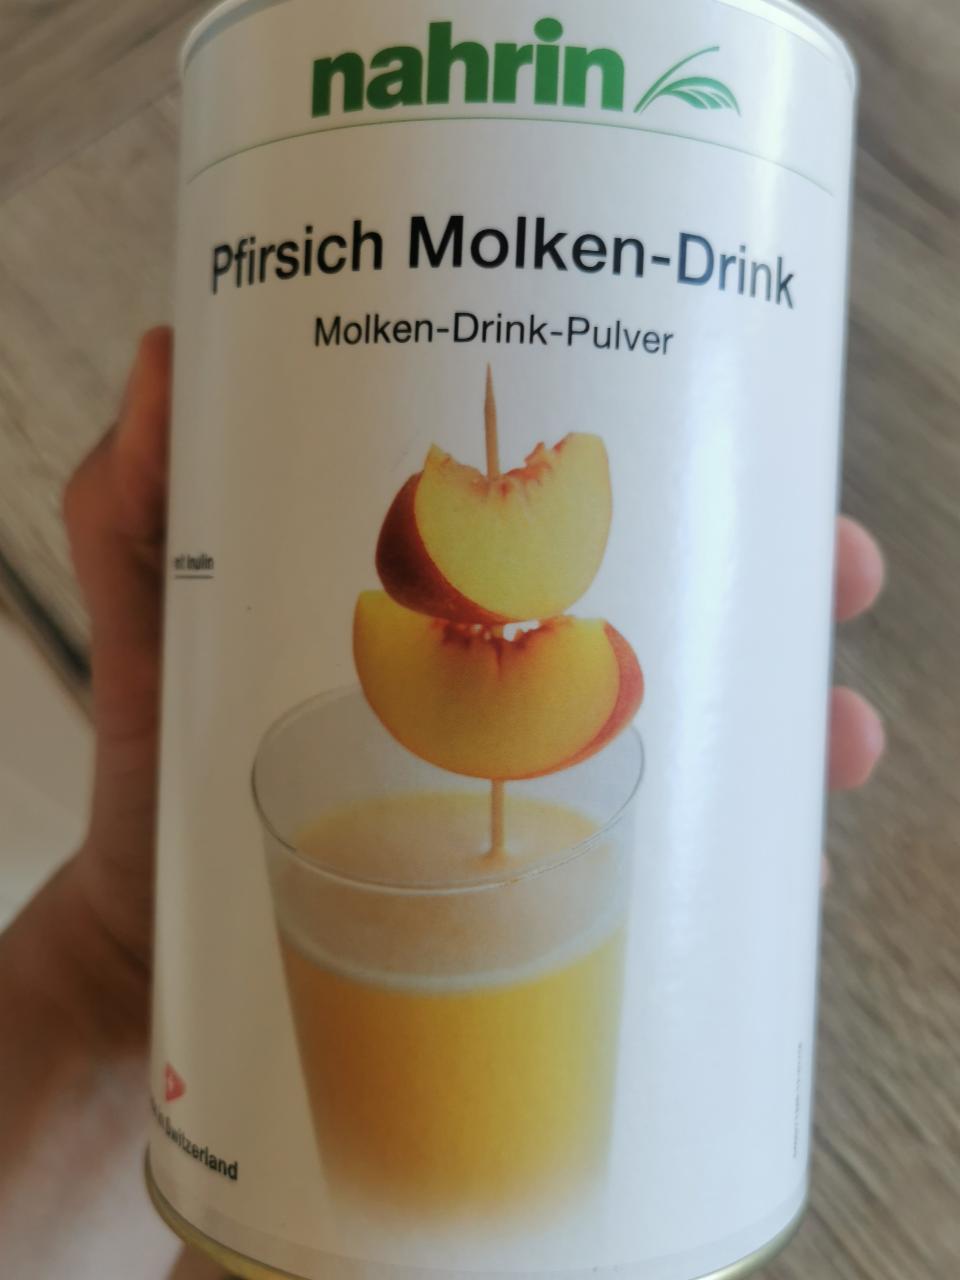 Fotografie - Pfirsich Molken-Drink nahrin